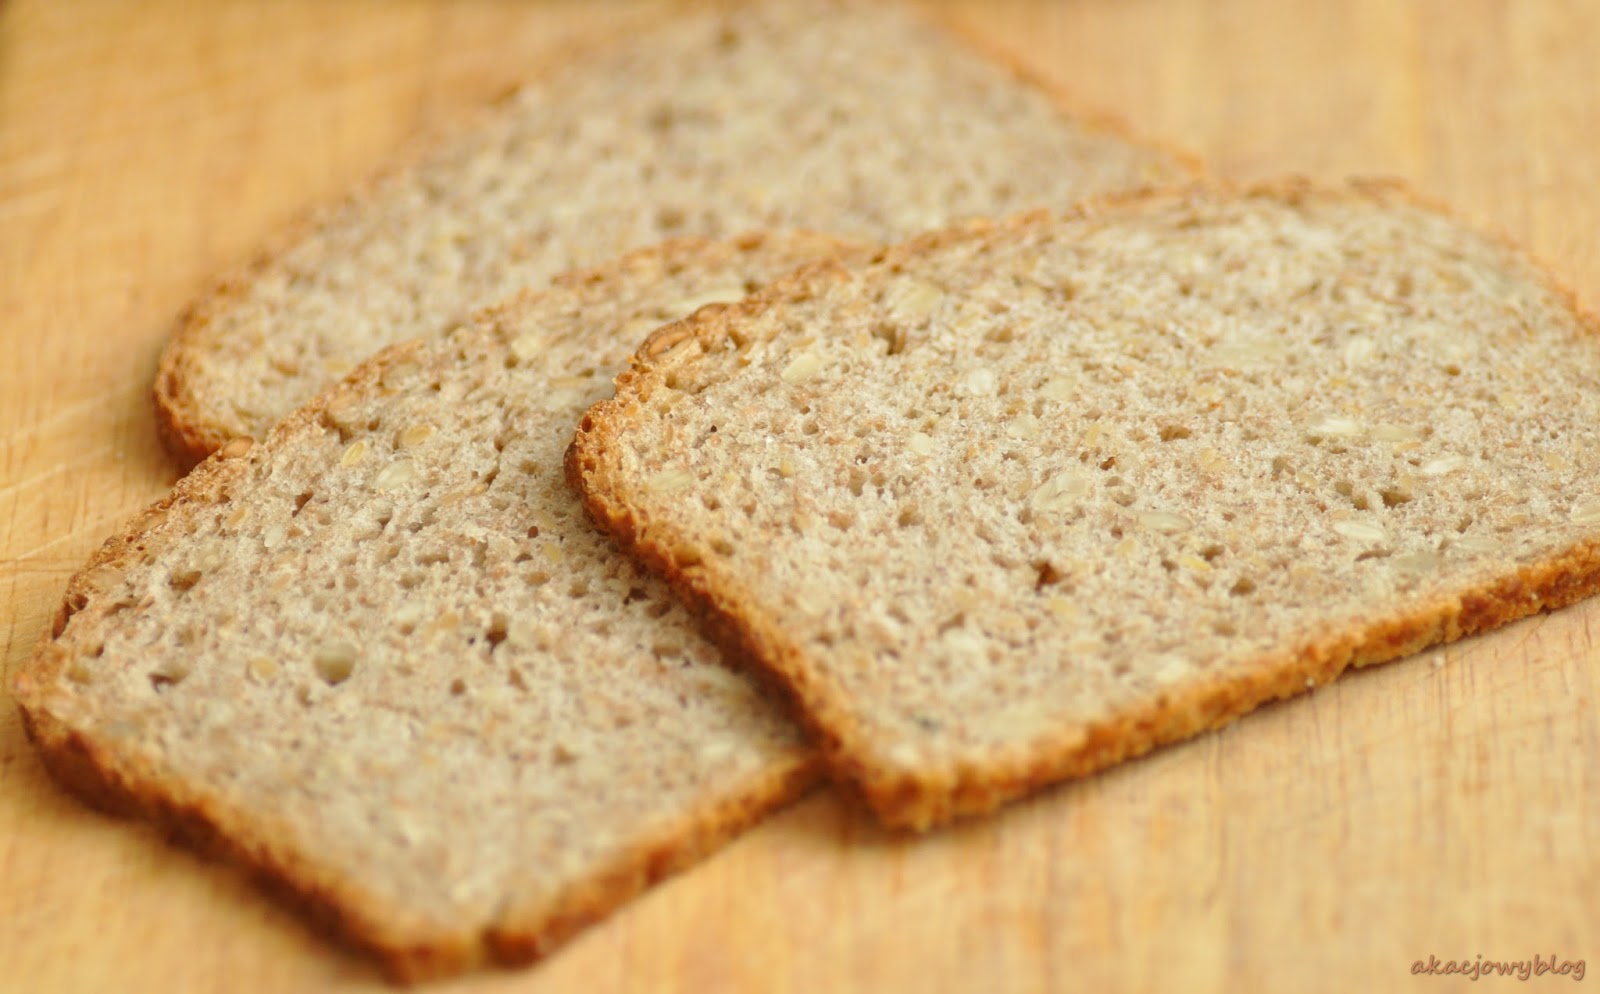 Nasze najlepsze chleby - pszenny na żytnim zakwasie i pytlowy. 